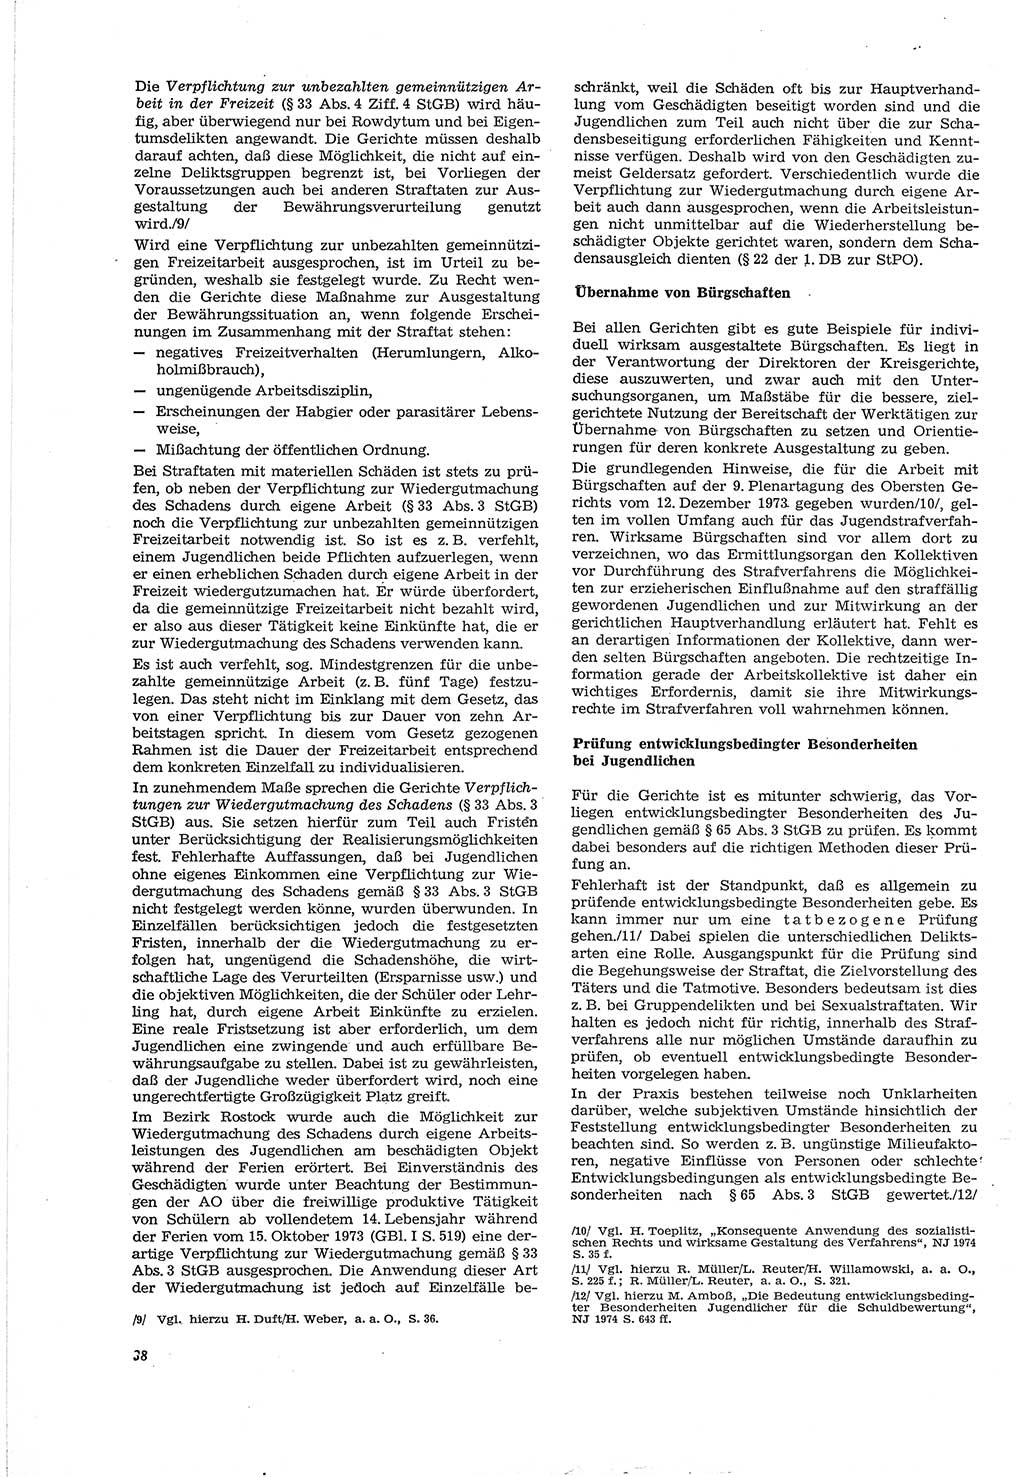 Neue Justiz (NJ), Zeitschrift für Recht und Rechtswissenschaft [Deutsche Demokratische Republik (DDR)], 30. Jahrgang 1976, Seite 38 (NJ DDR 1976, S. 38)